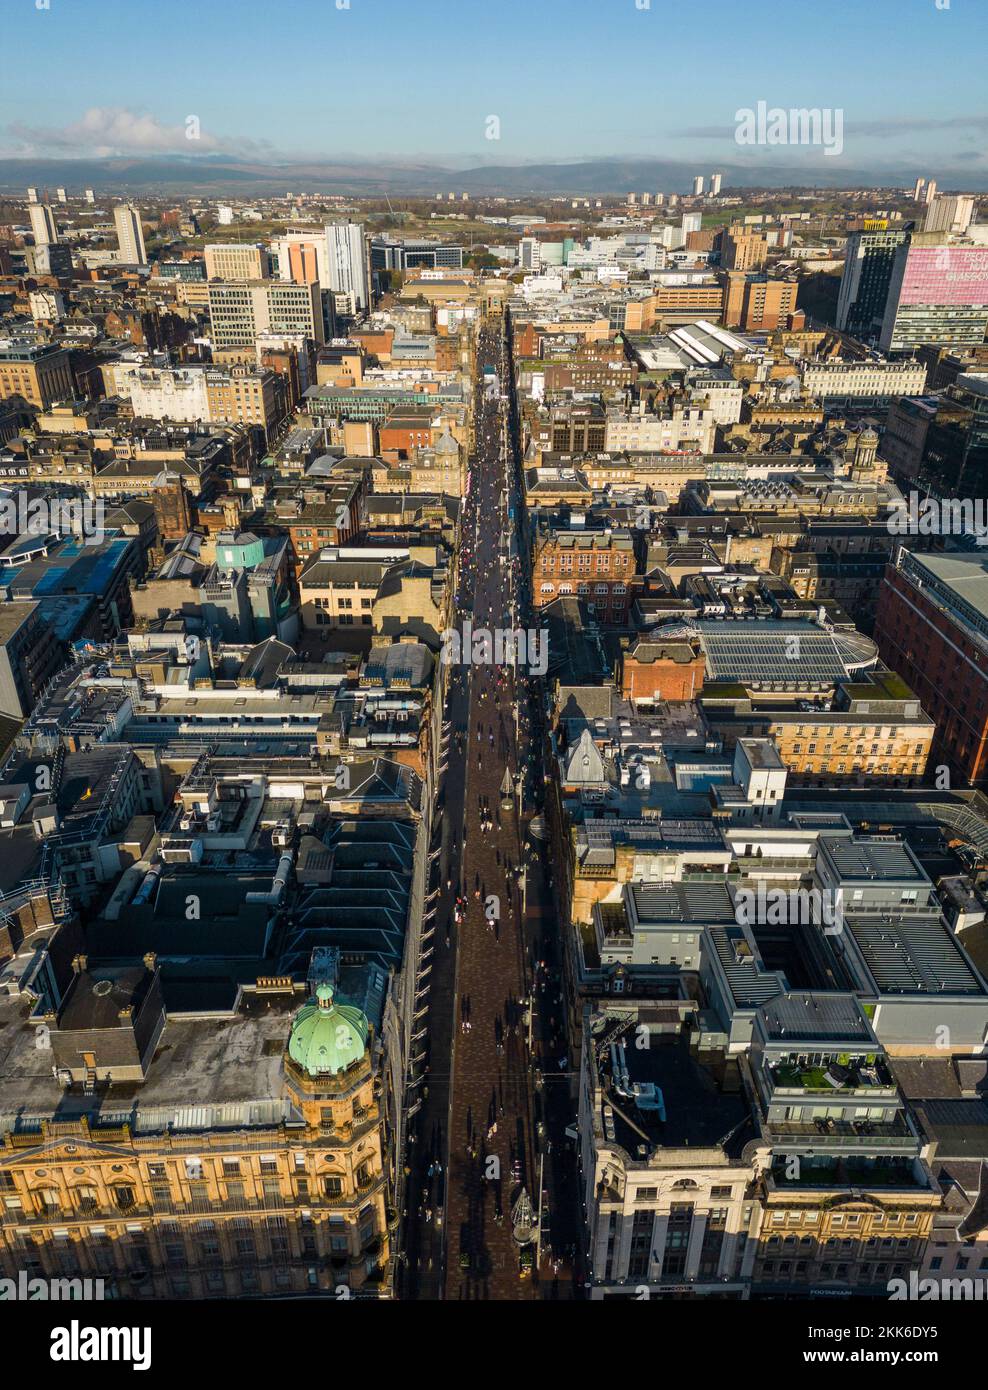 Vista aérea desde el drone de Buchanan Street y el horizonte del centro de Glasgow, Escocia, Reino Unido Foto de stock